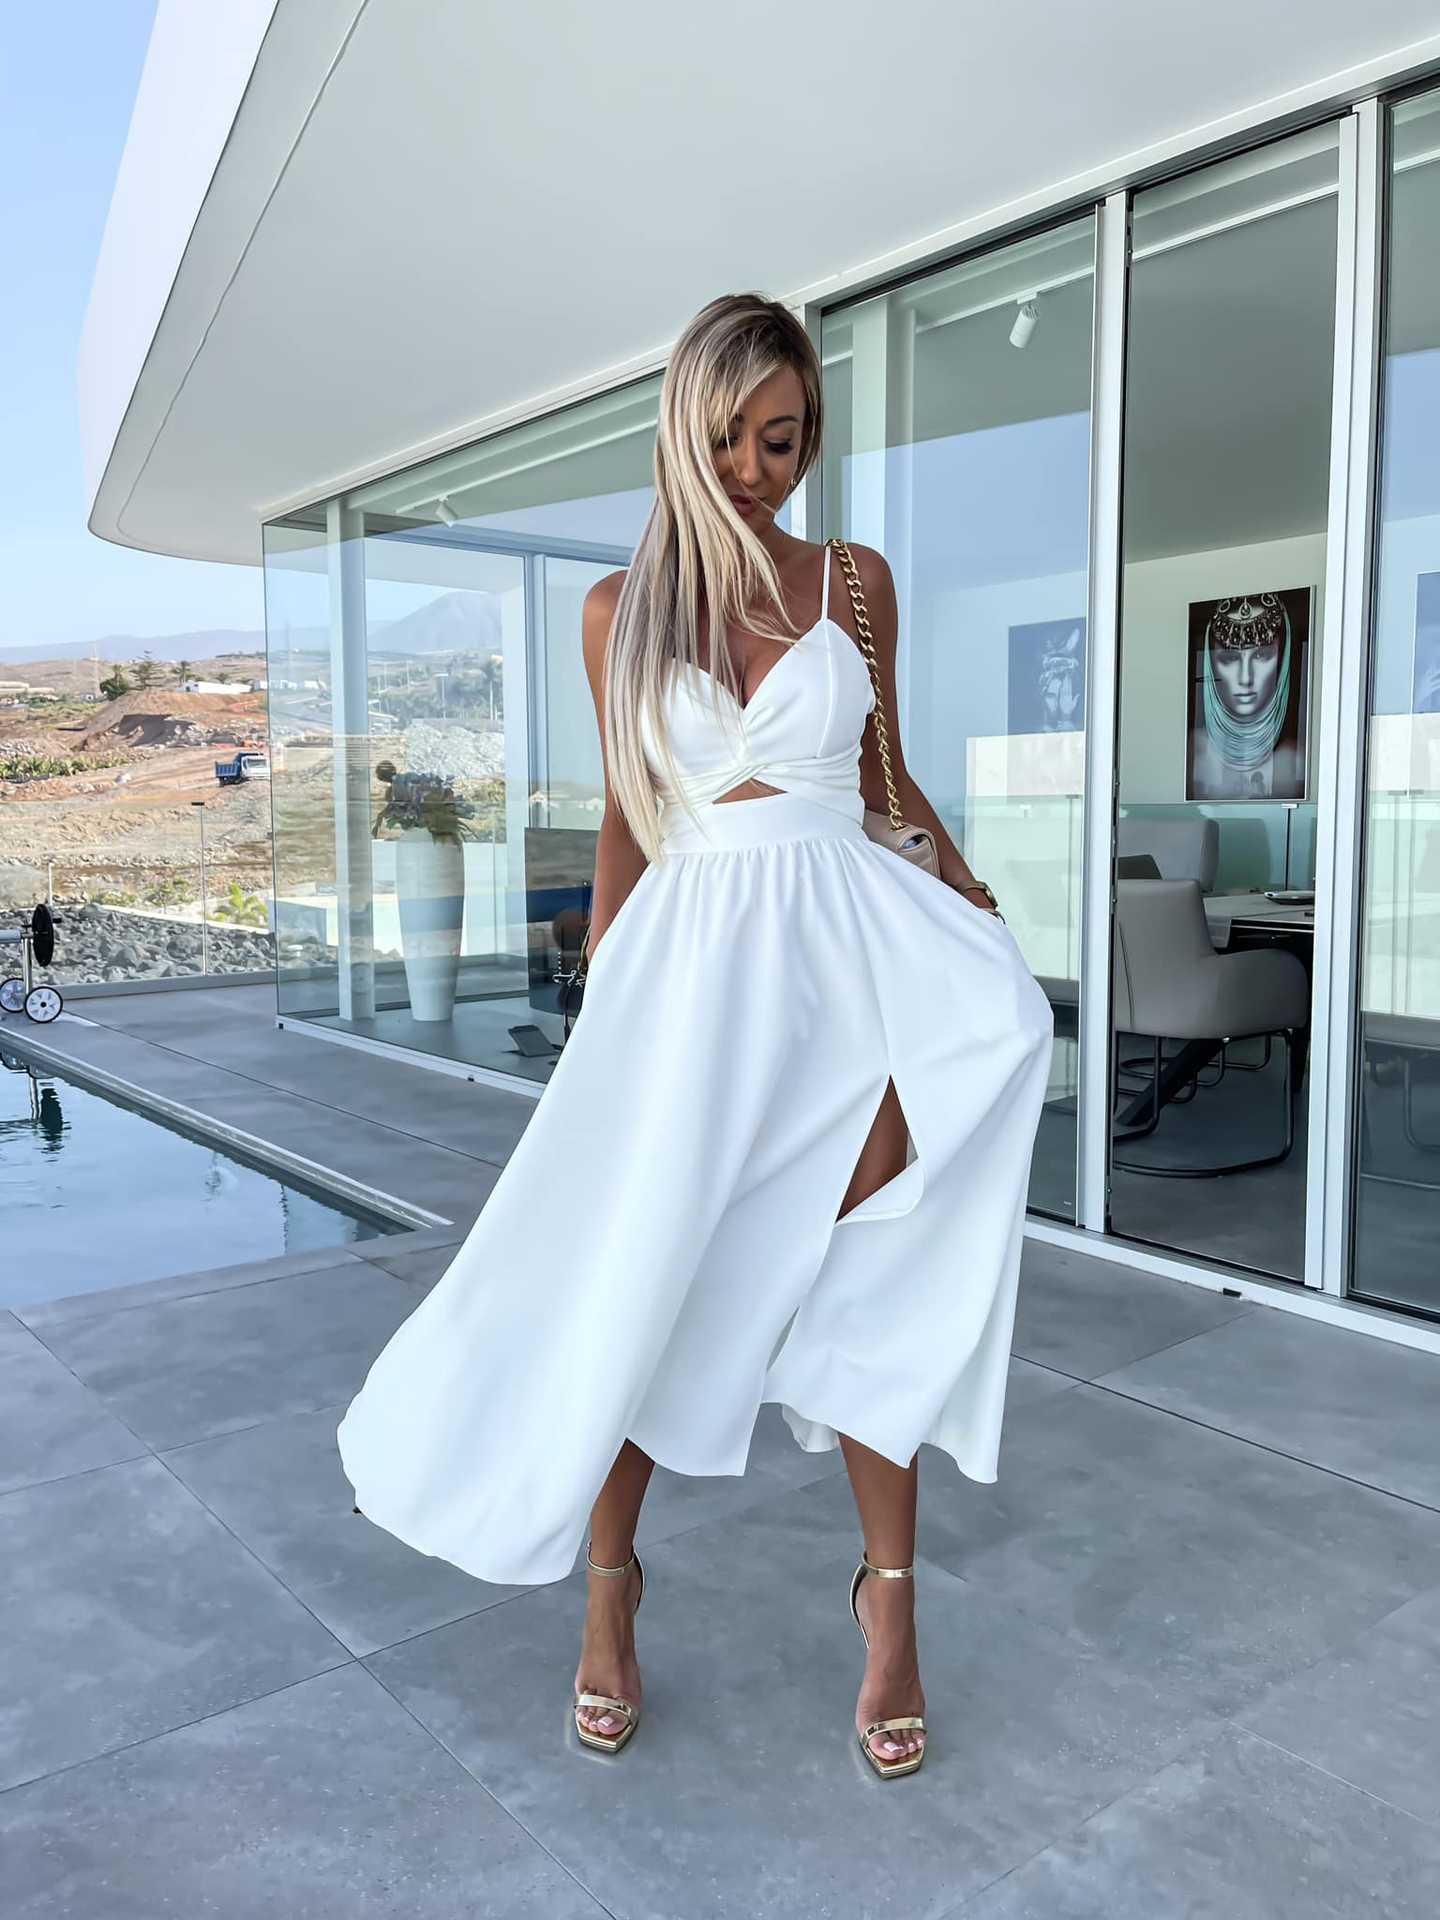 Elegant Midriff Baring Summer Dresses-Dresses-White-S-Free Shipping Leatheretro